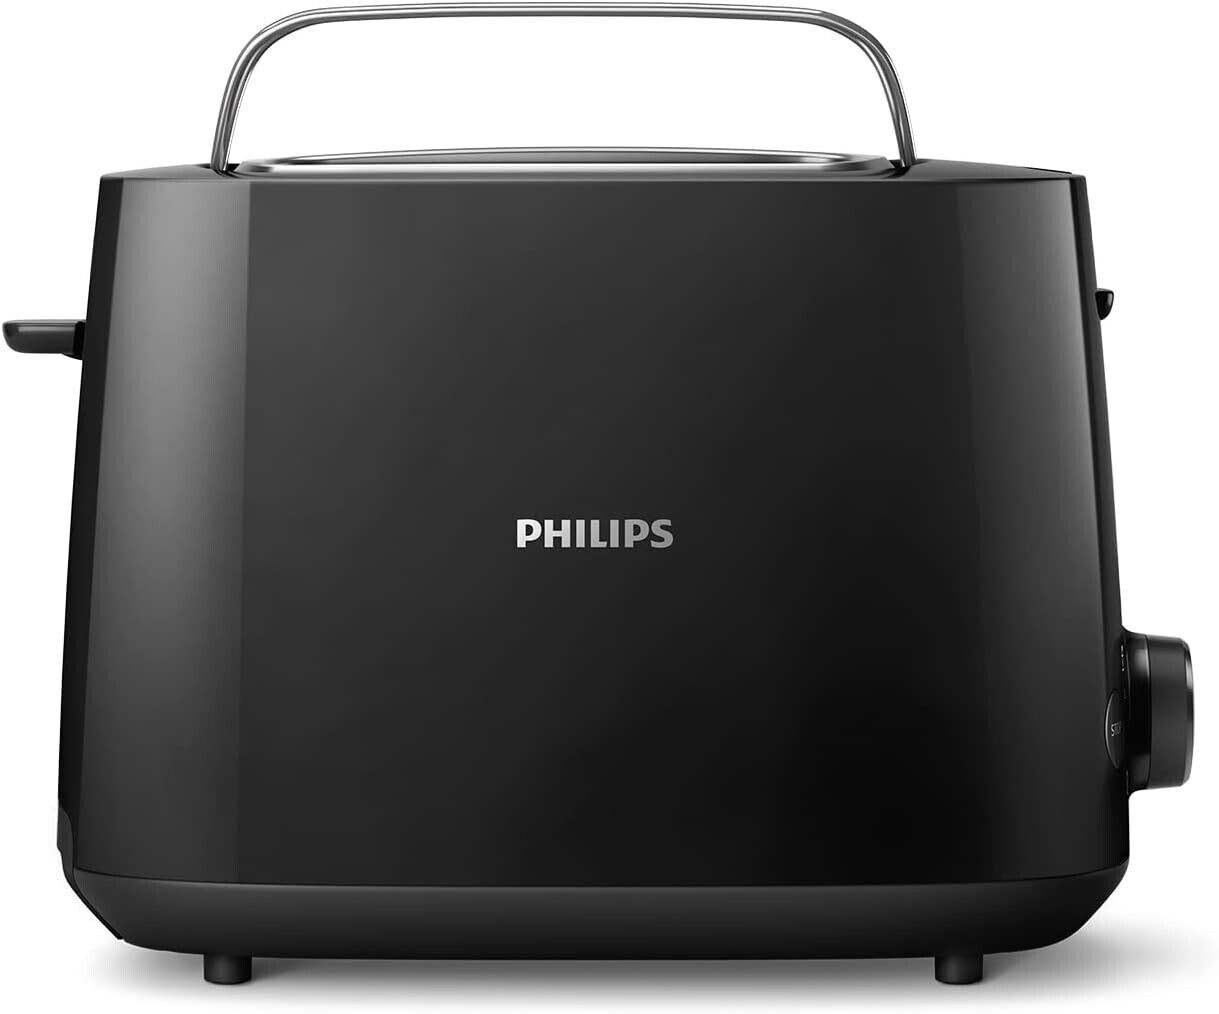 Philips Toaster – 2 Toastschlitze, 8 Stufen Brötchenaufsatz, Auftaufunktion neu